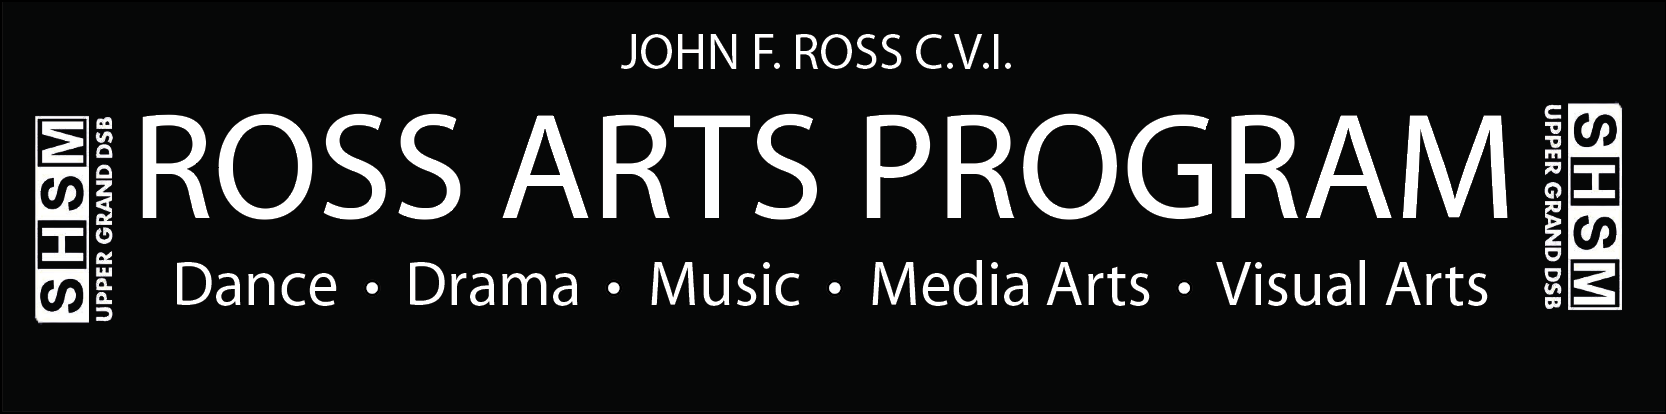 Ross Arts Program